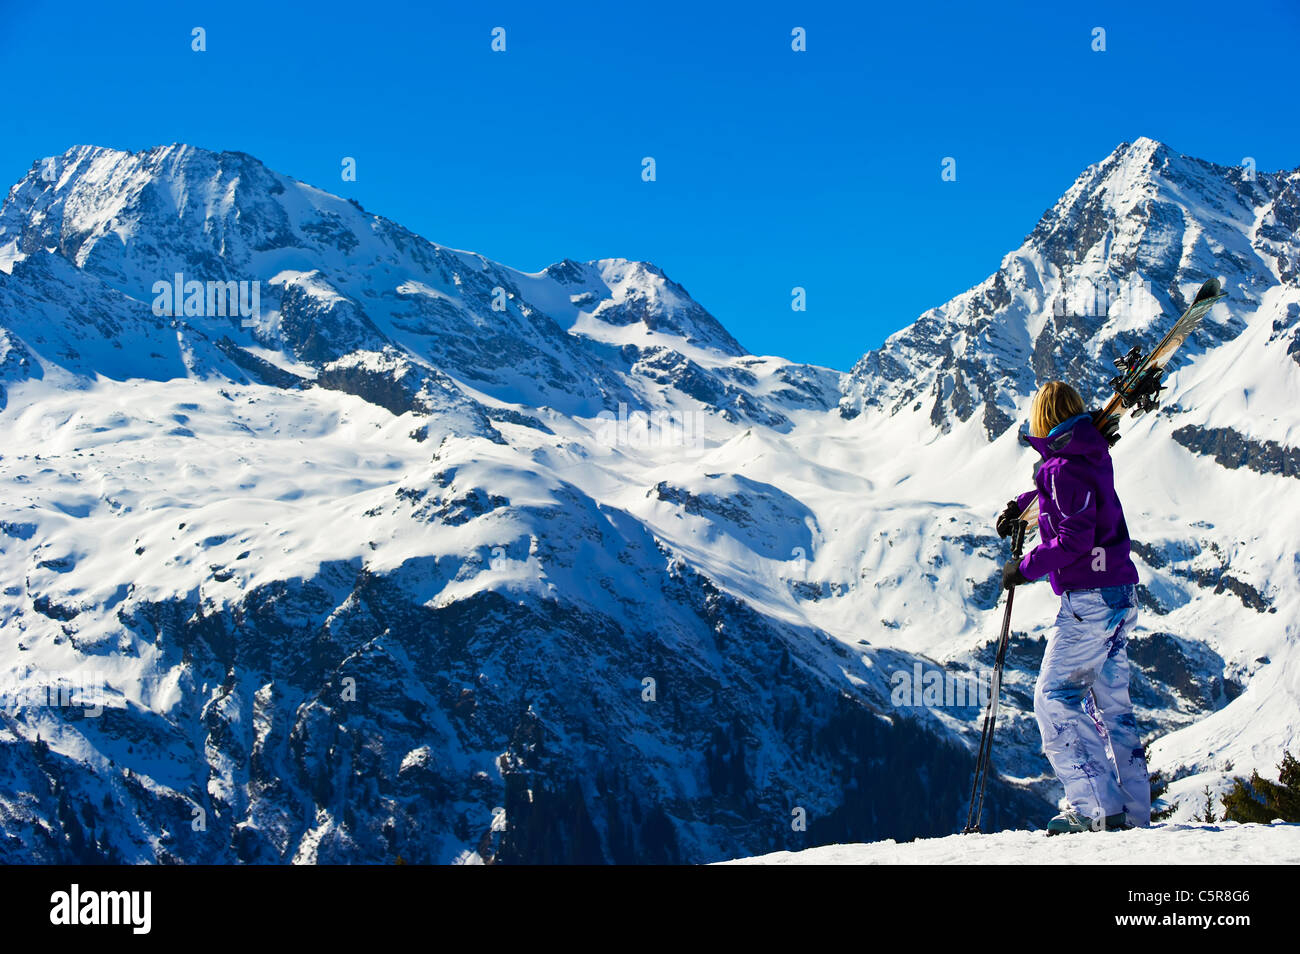 Un esquiador vistas impresionantes montañas nevadas en invierno. Foto de stock